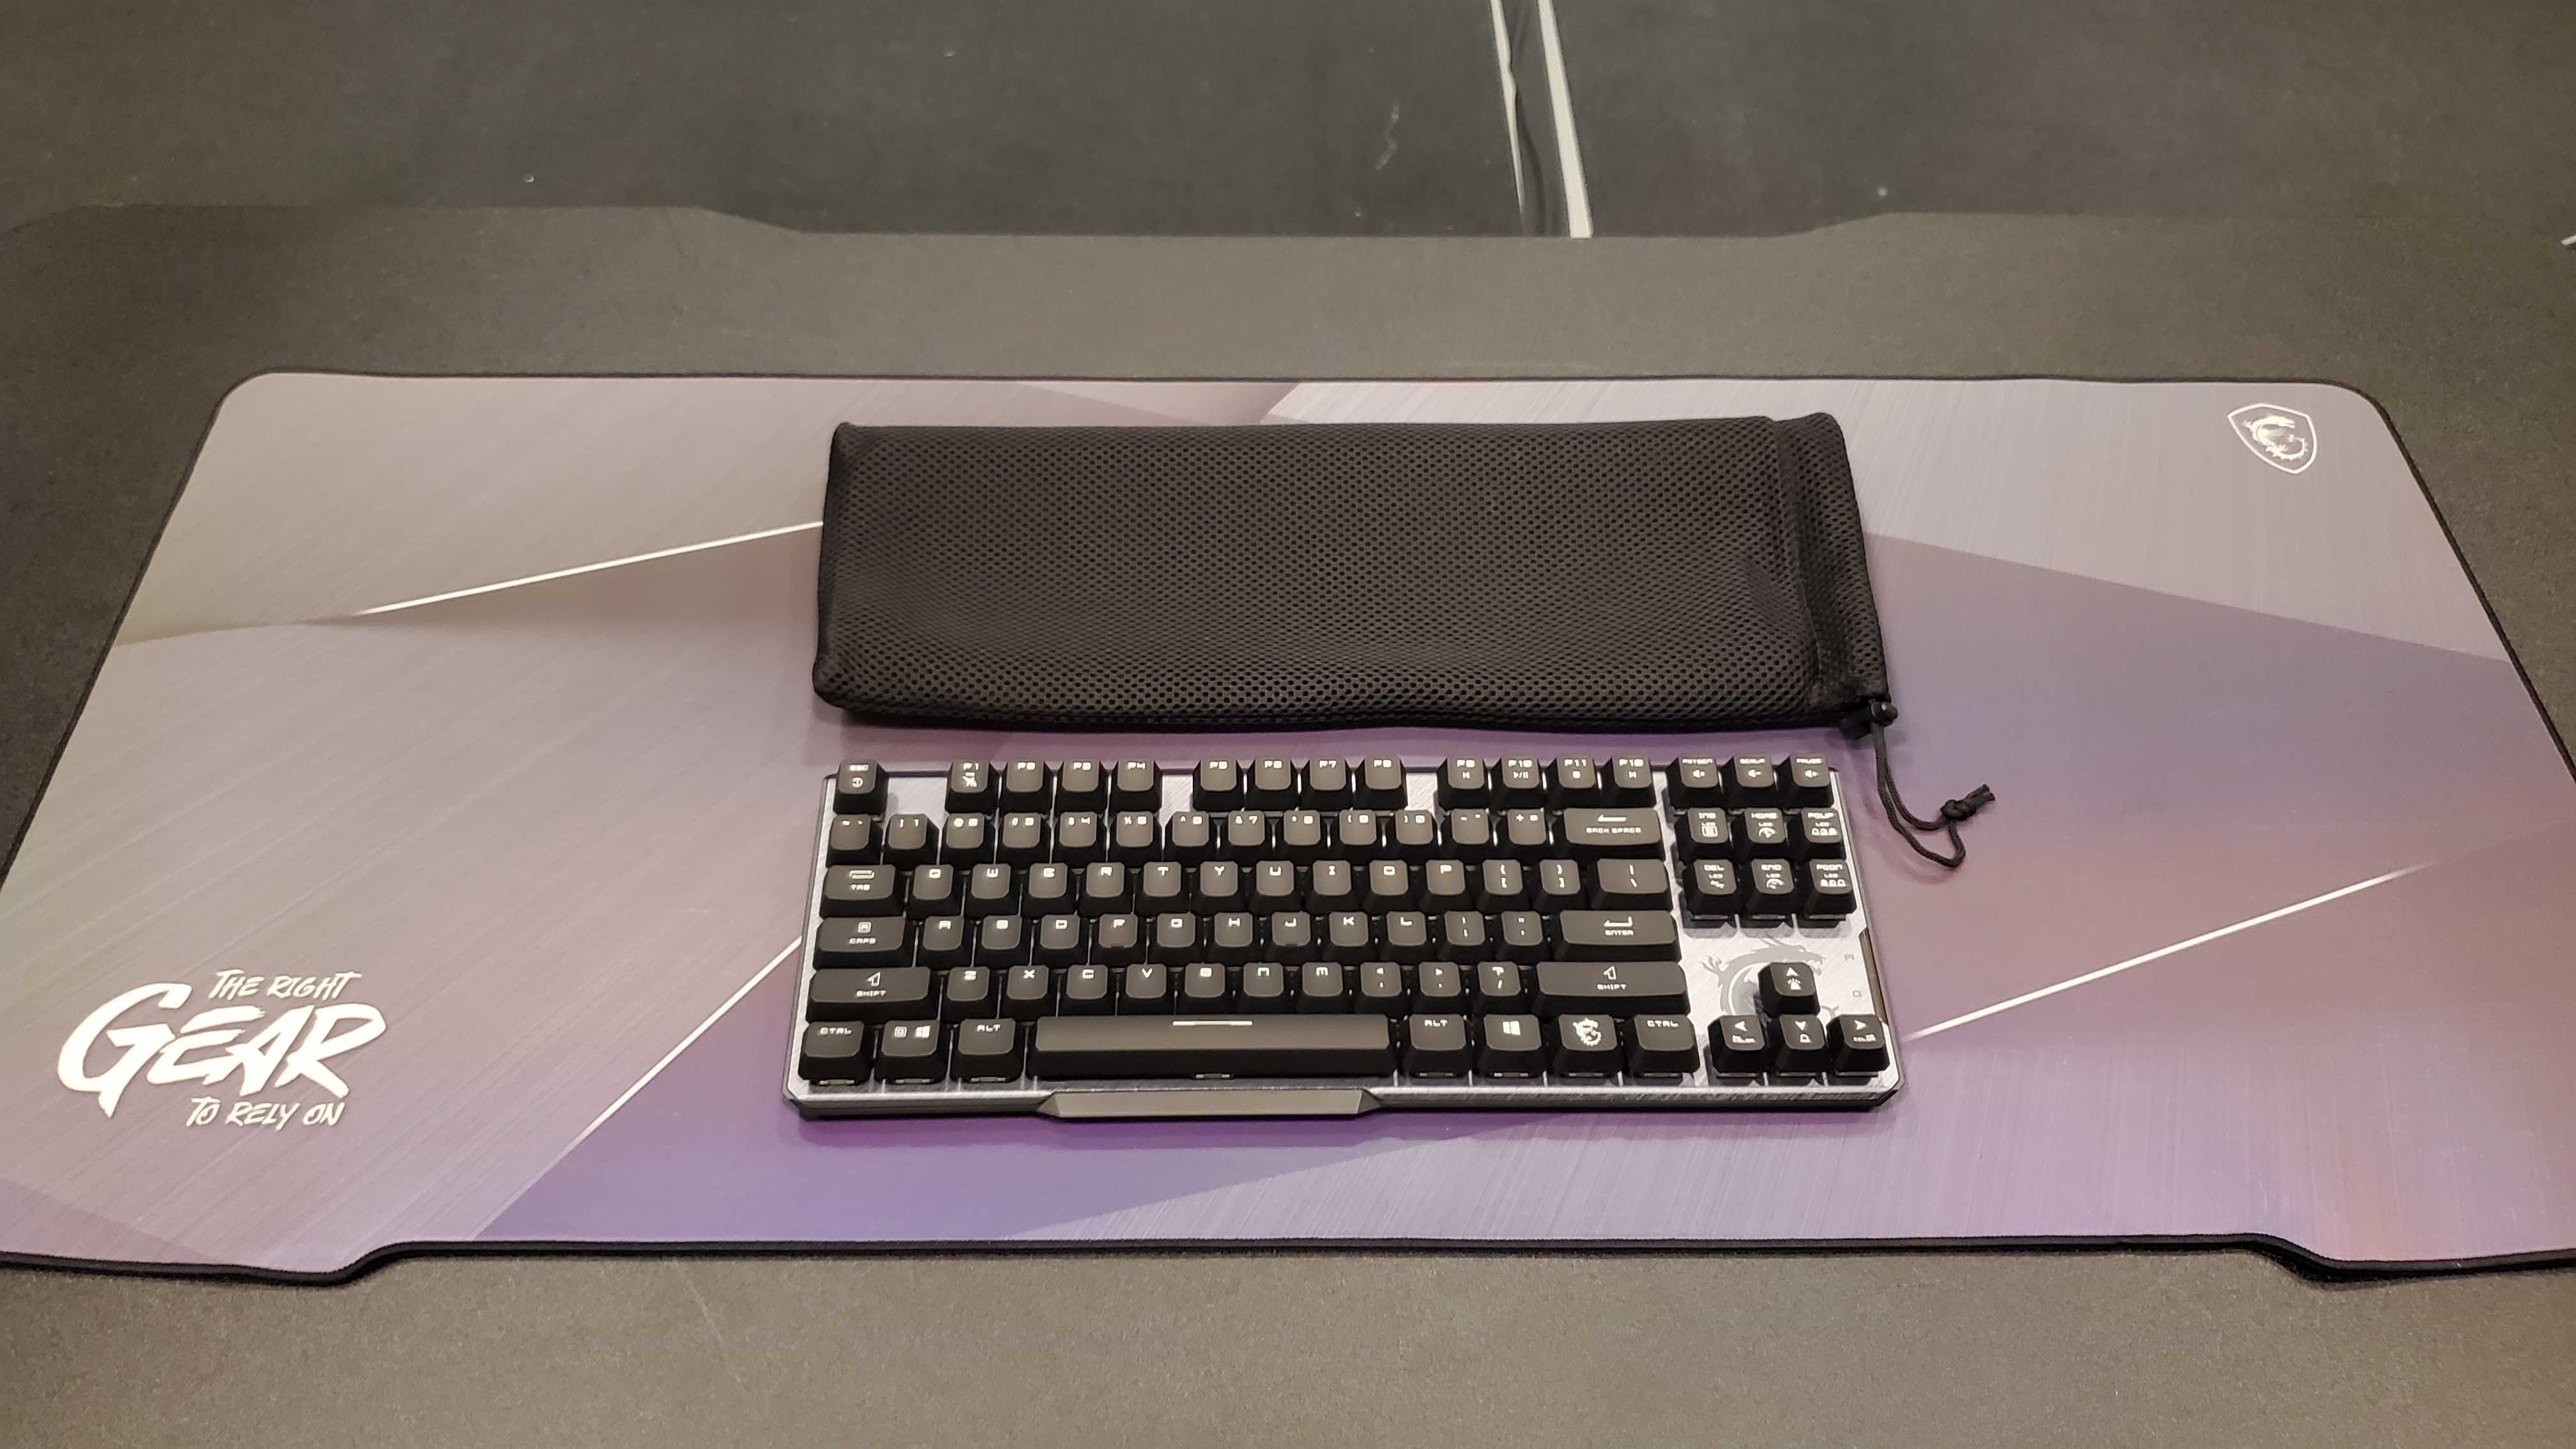 a black mechanical gaming keyboard